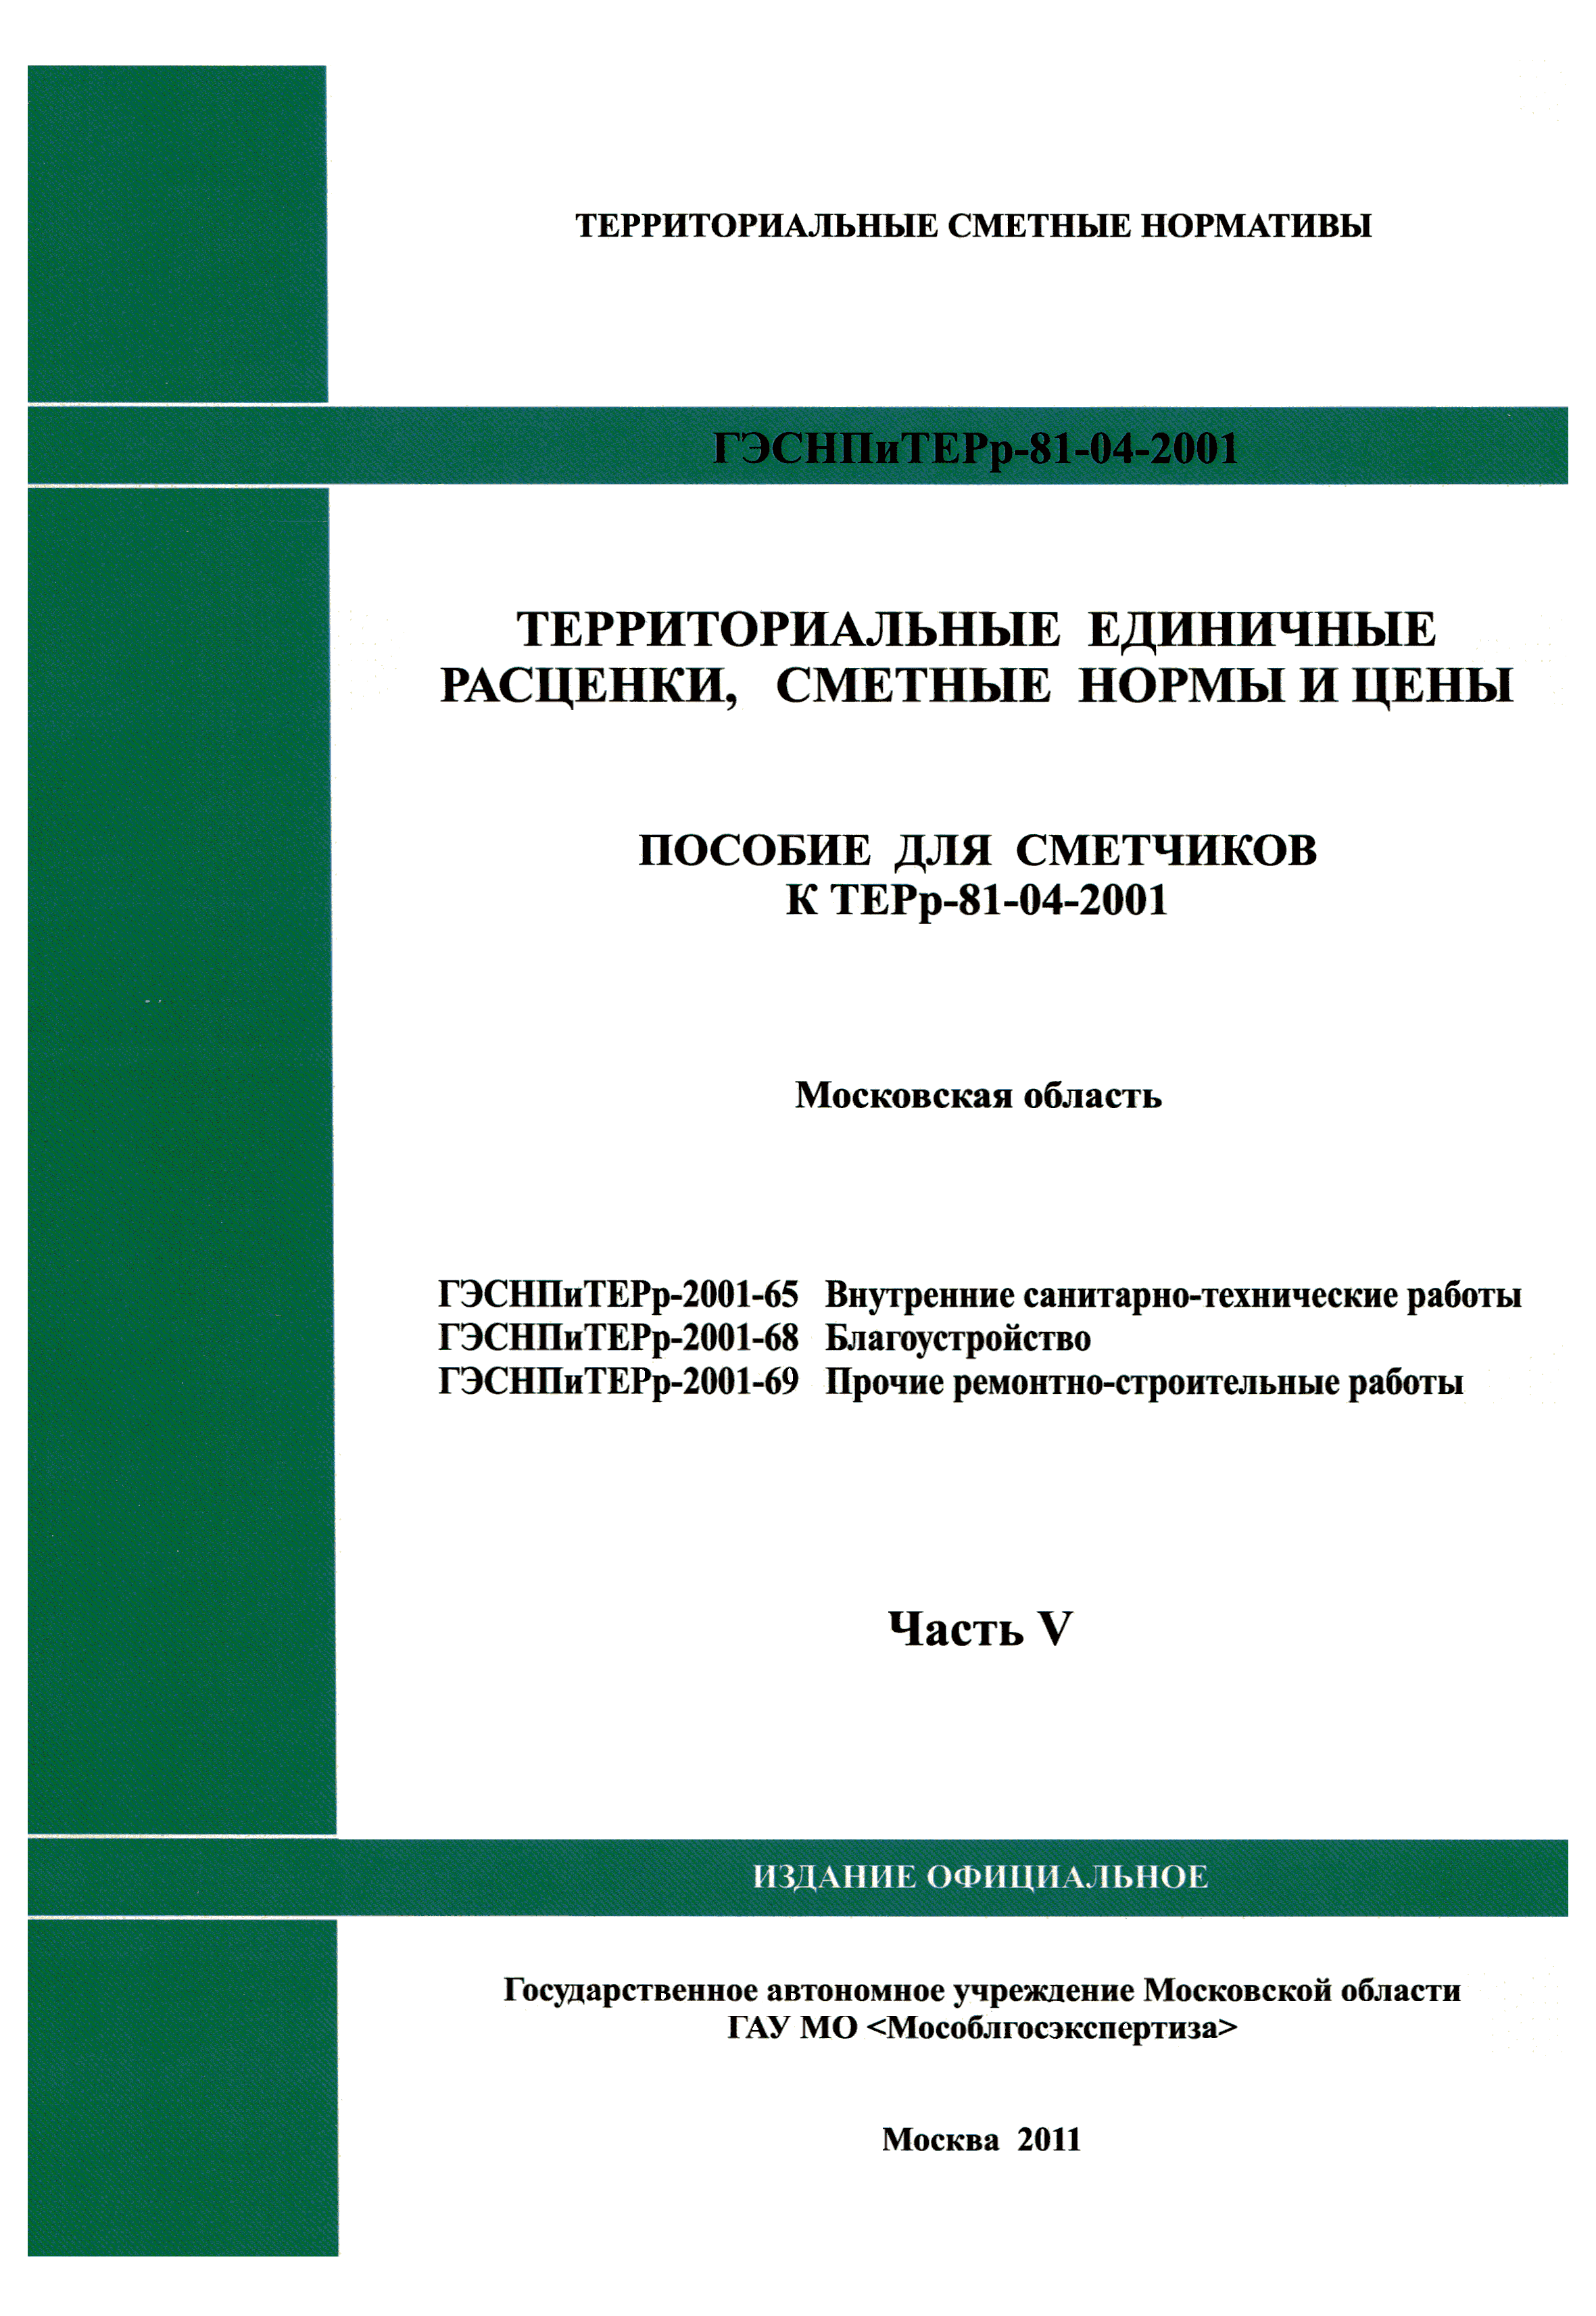 ГЭСНПиТЕРр 2001-69 Московской области